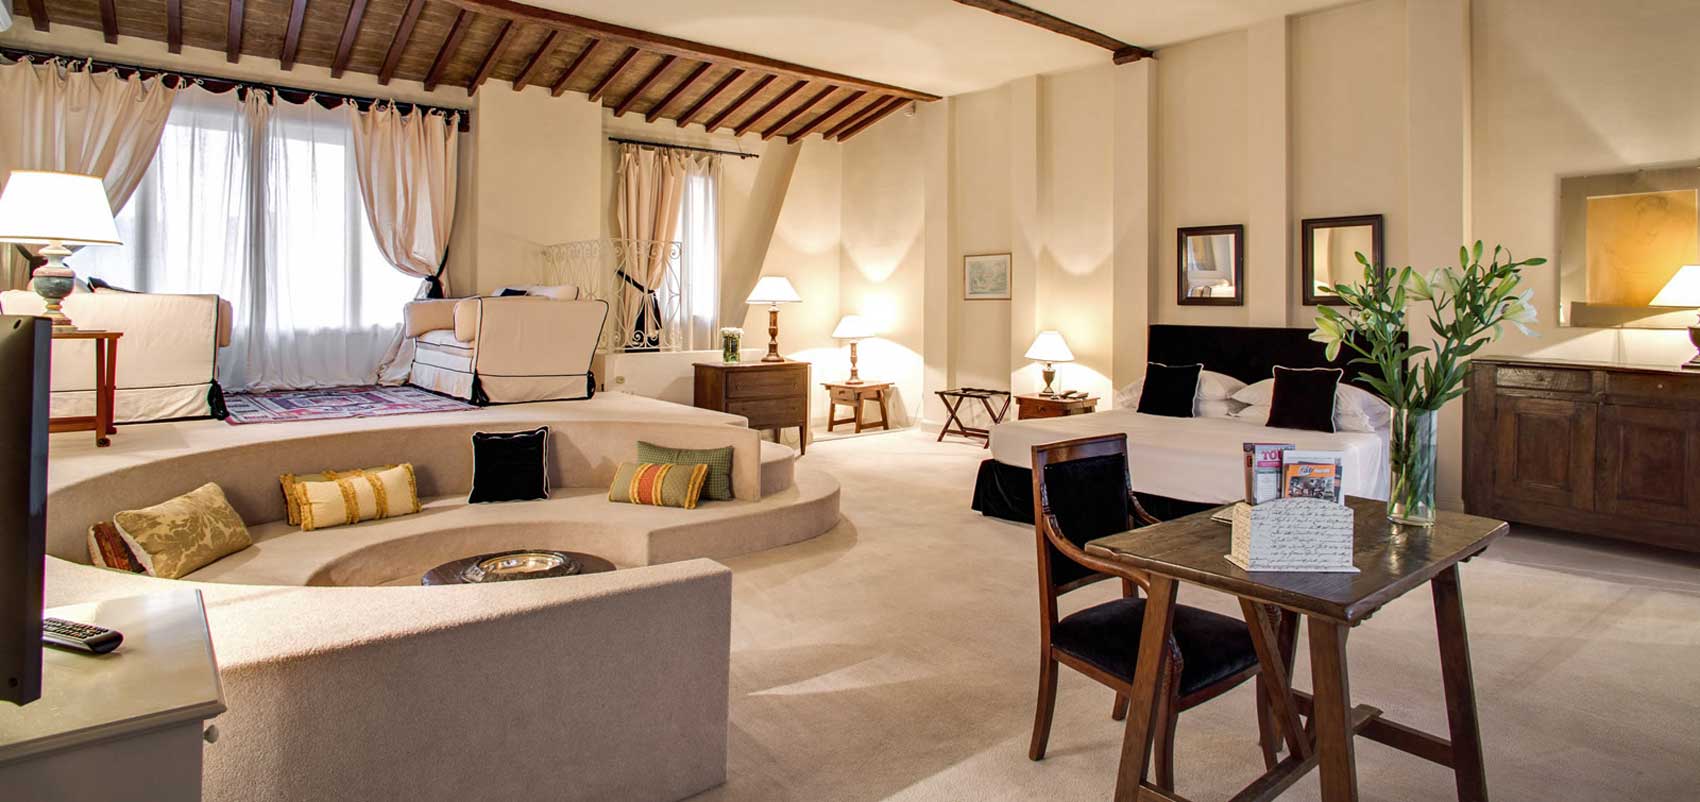 Une suite du J and J Hotel de charme, Florence - Itallie